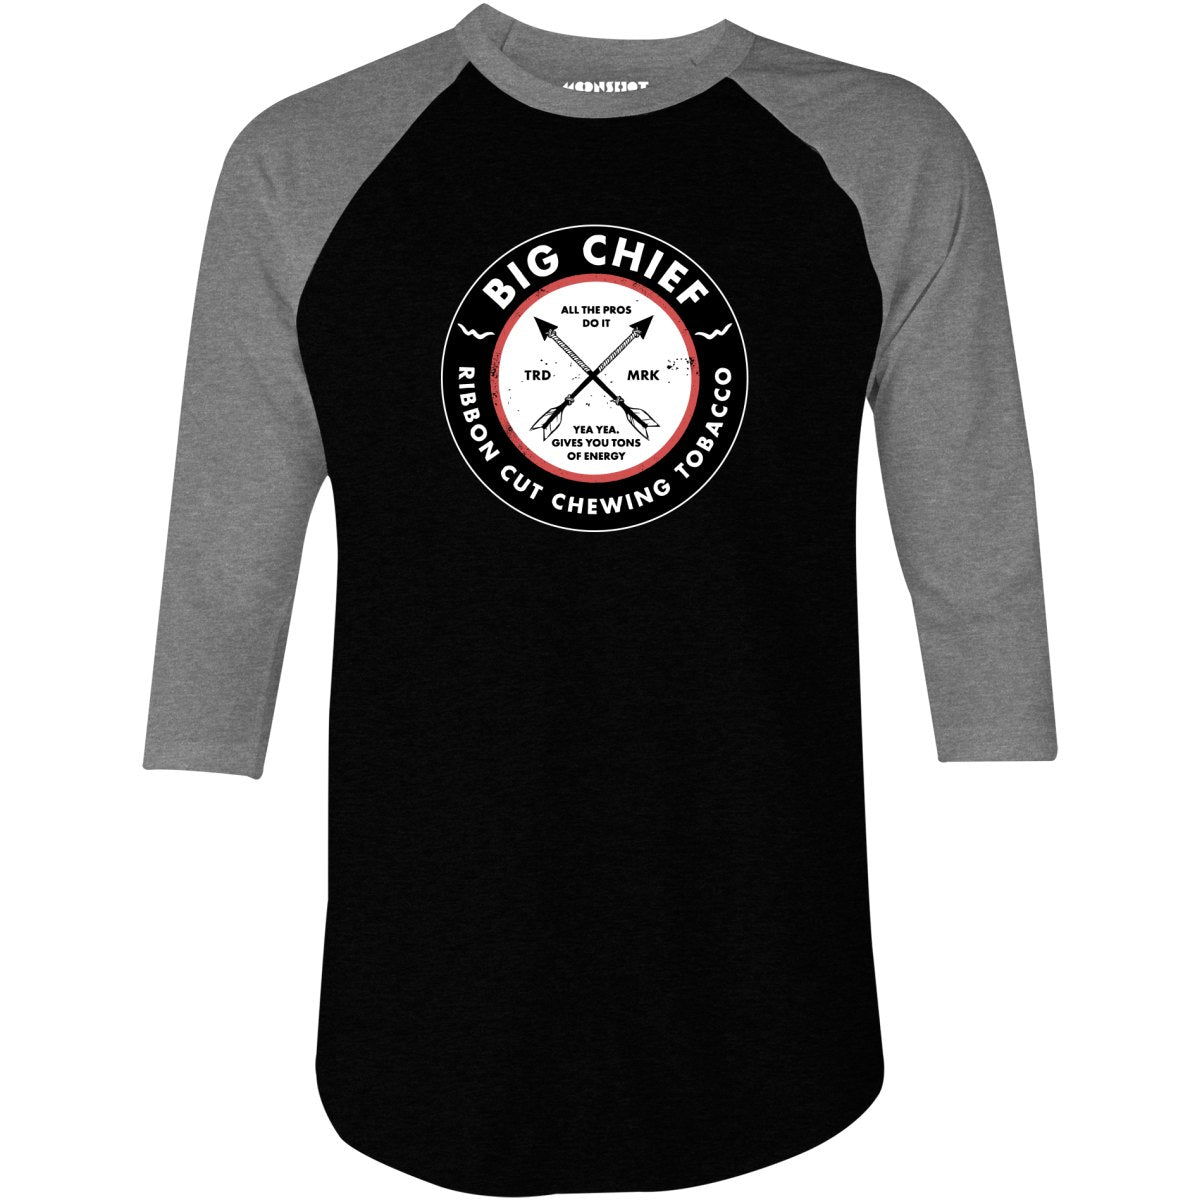 Big Chief - Yea Yea Gives You Tons of Energy - 3/4 Sleeve Raglan T-Shirt